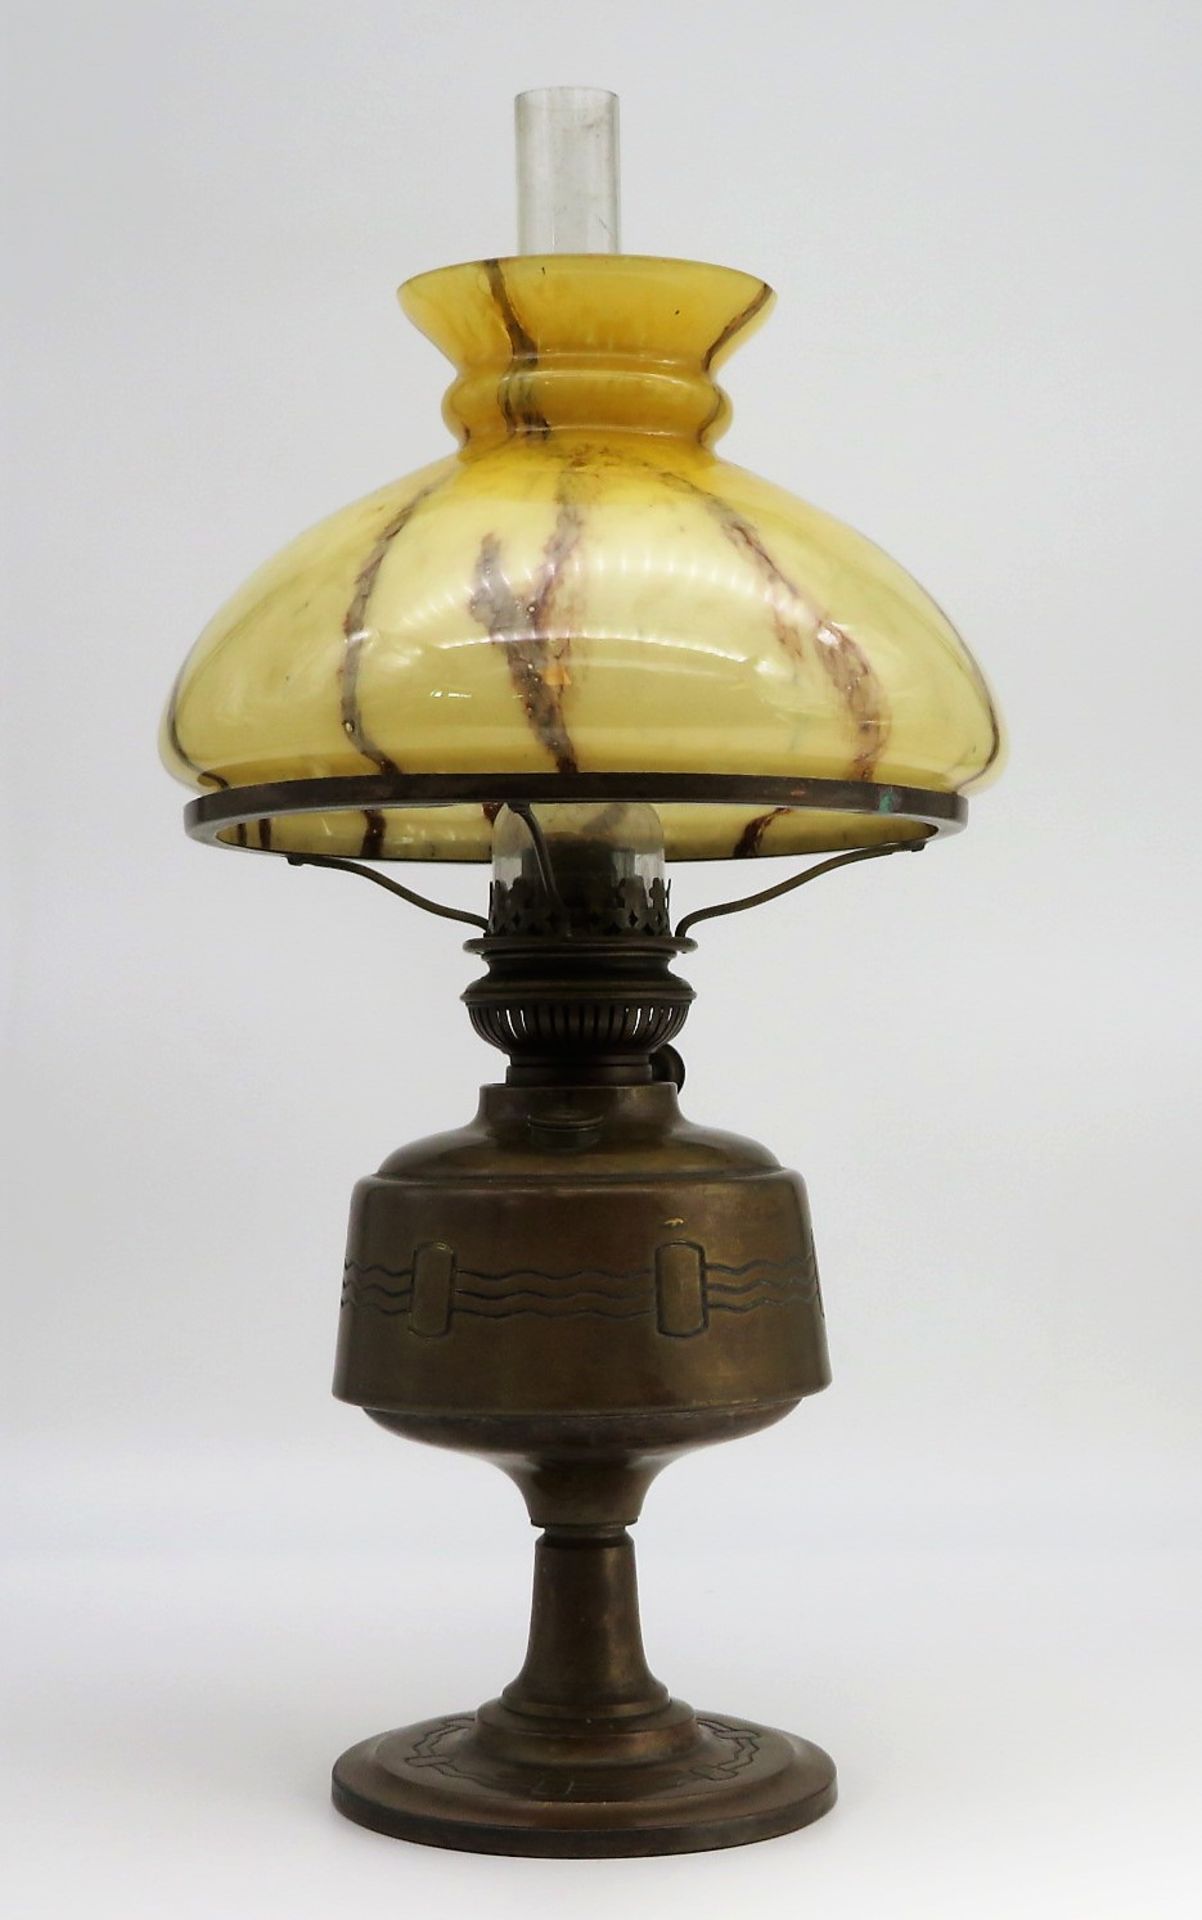 Petroleumlampe, Art Déco, um 1910, Messing mit bräunlich eingefärbtem Glasschirm, h 53 cm, d 25 cm.